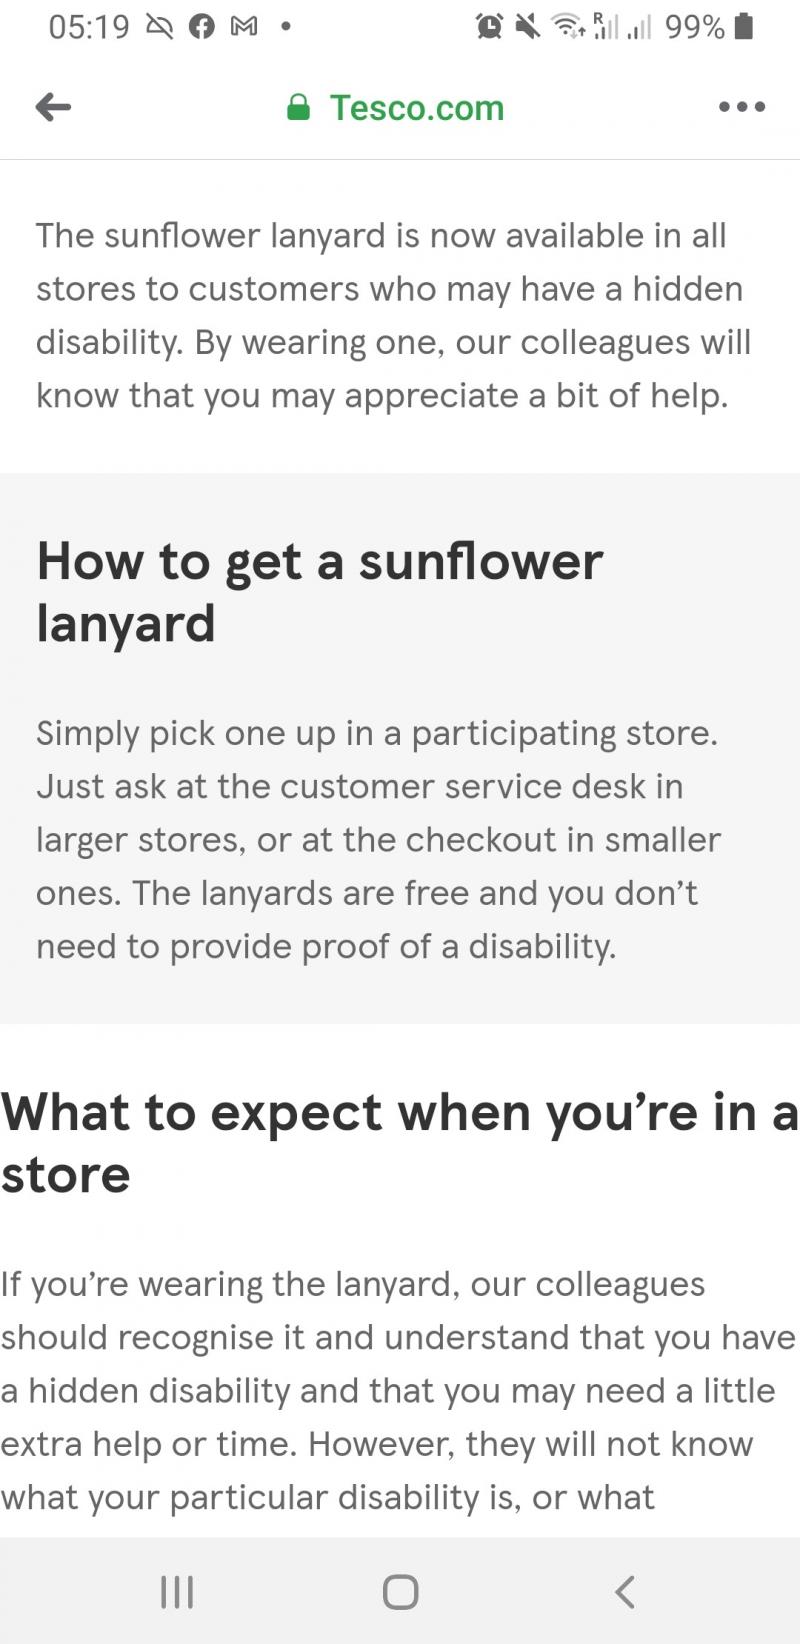 Il sunflower layland è il pass medico per non indossare la mascherina e a quan